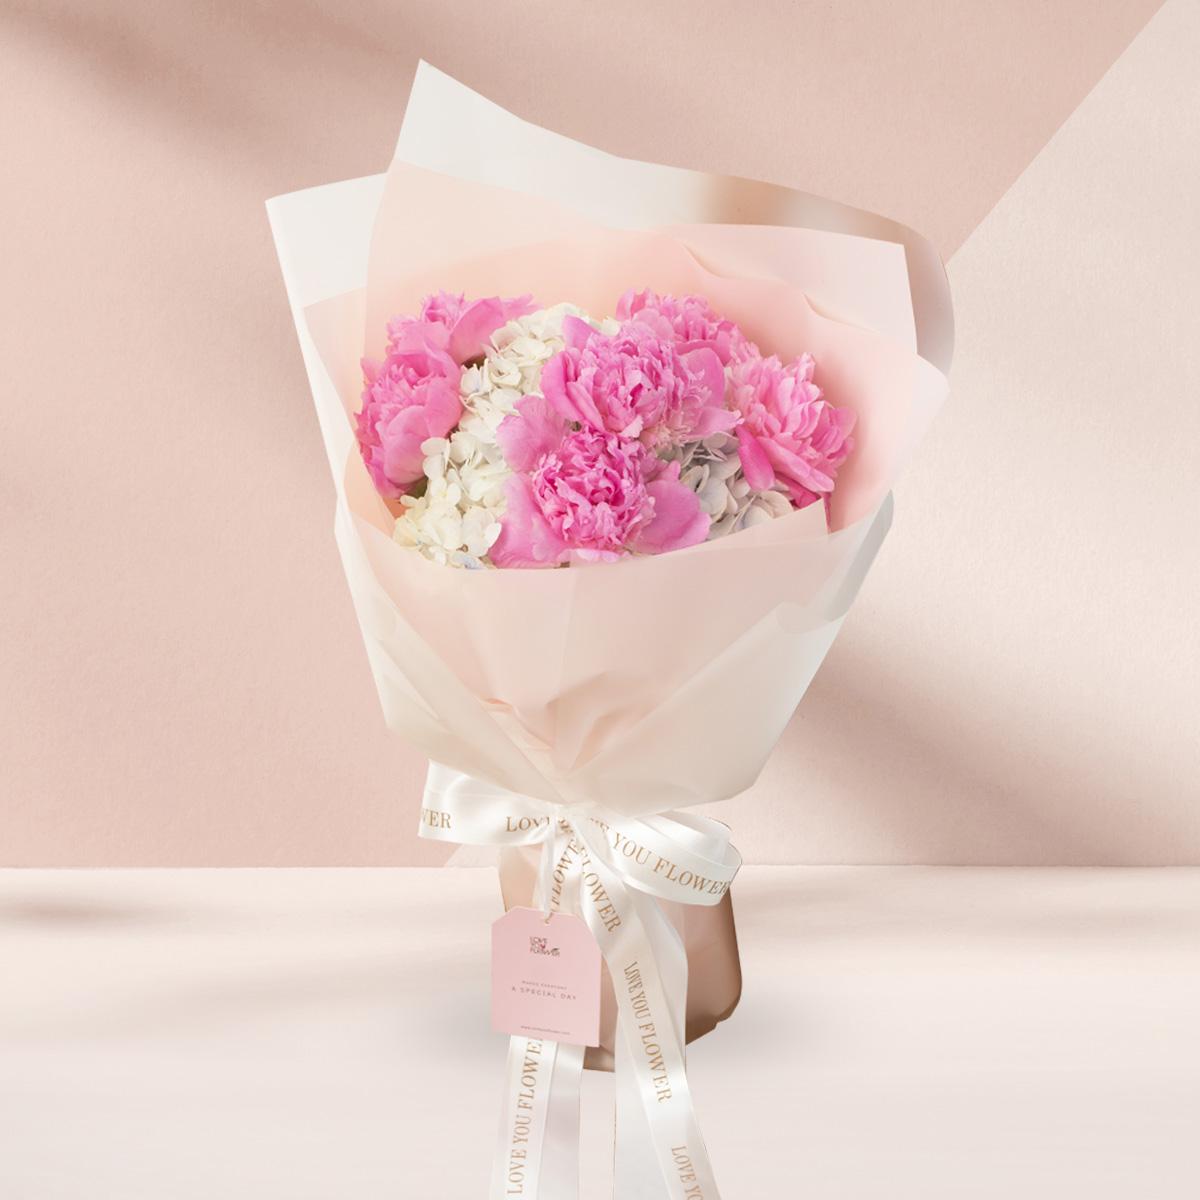 ช่อดอกโบตั๋น สีชมพู 6 ดอก ดอกไฮเดรนเยียขาวบลัสฟ้าอ่อน 2 หัว ห่อด้วยกระดาษสี Cotton Candy ผูกด้วยริบบิ้นสีทองและขาว